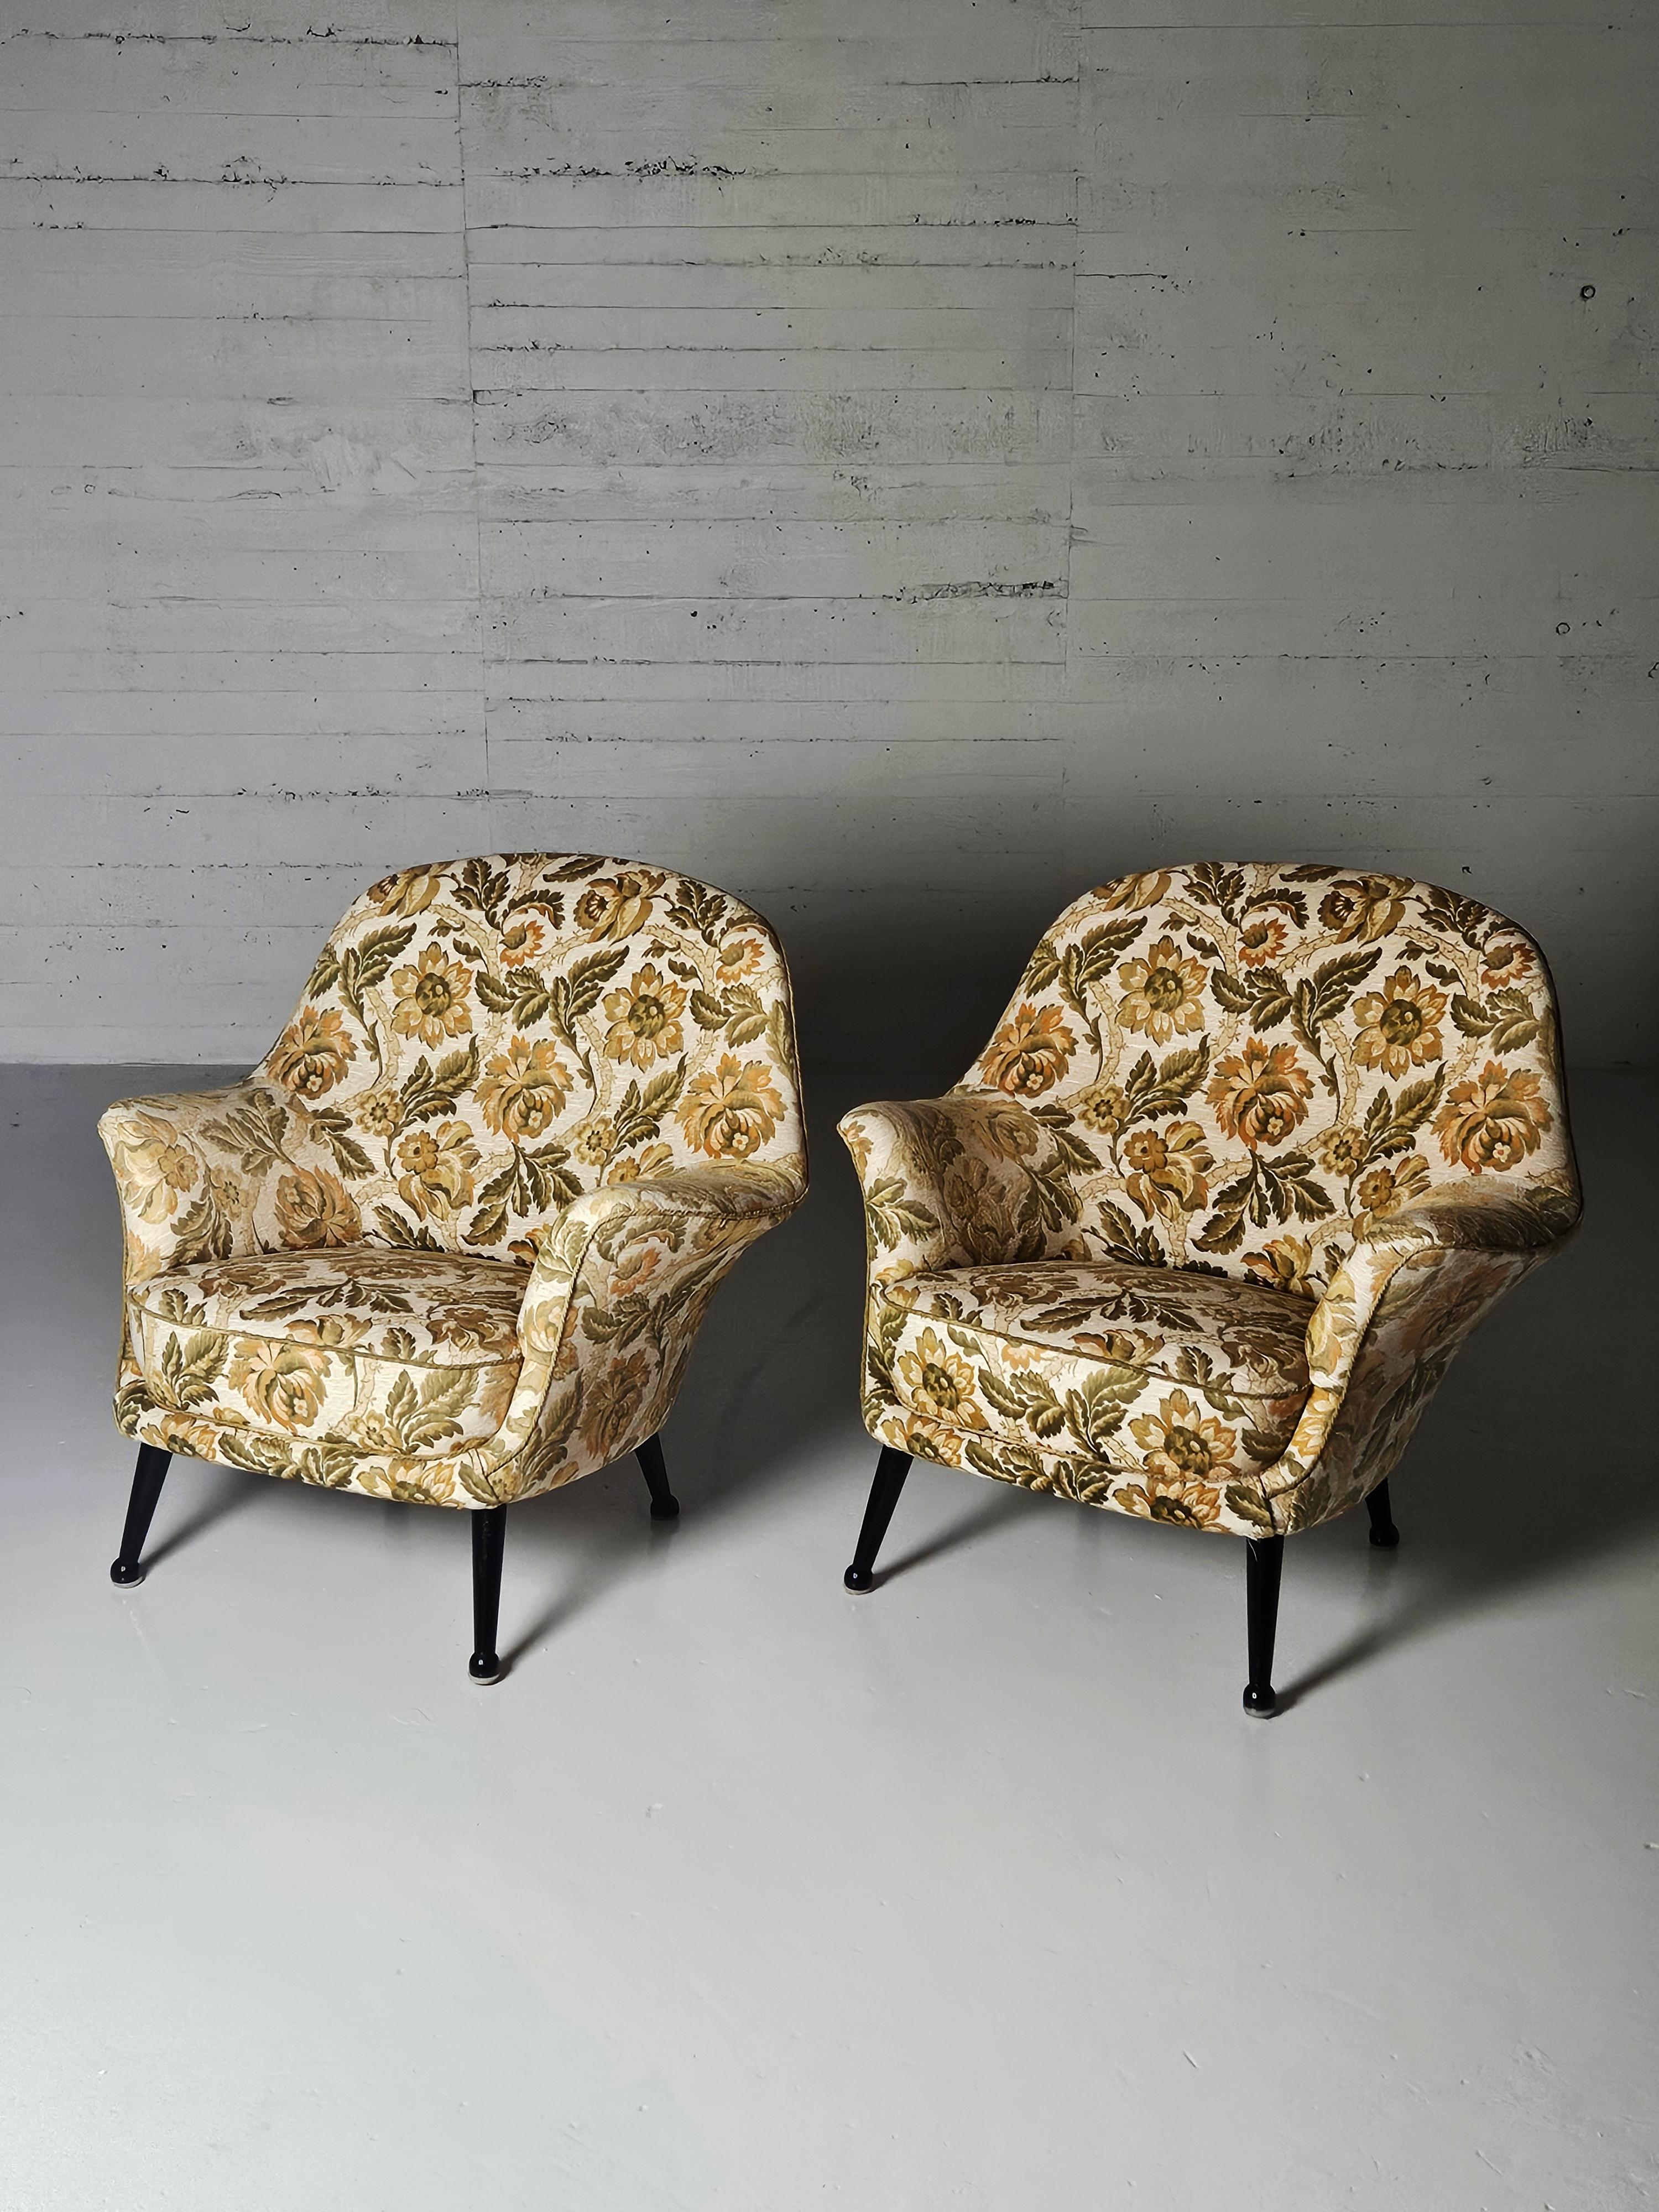 Rare fauteuil conçu par Arne Norell et produit par Westbergs Möbler AB à Tranås, Suède, à la fin des années 1950. Le modèle s'appelle 'Divina' et nous avons une superbe paire avec des pieds noirs laqués et un tissu en coton à motifs floraux. 

Les